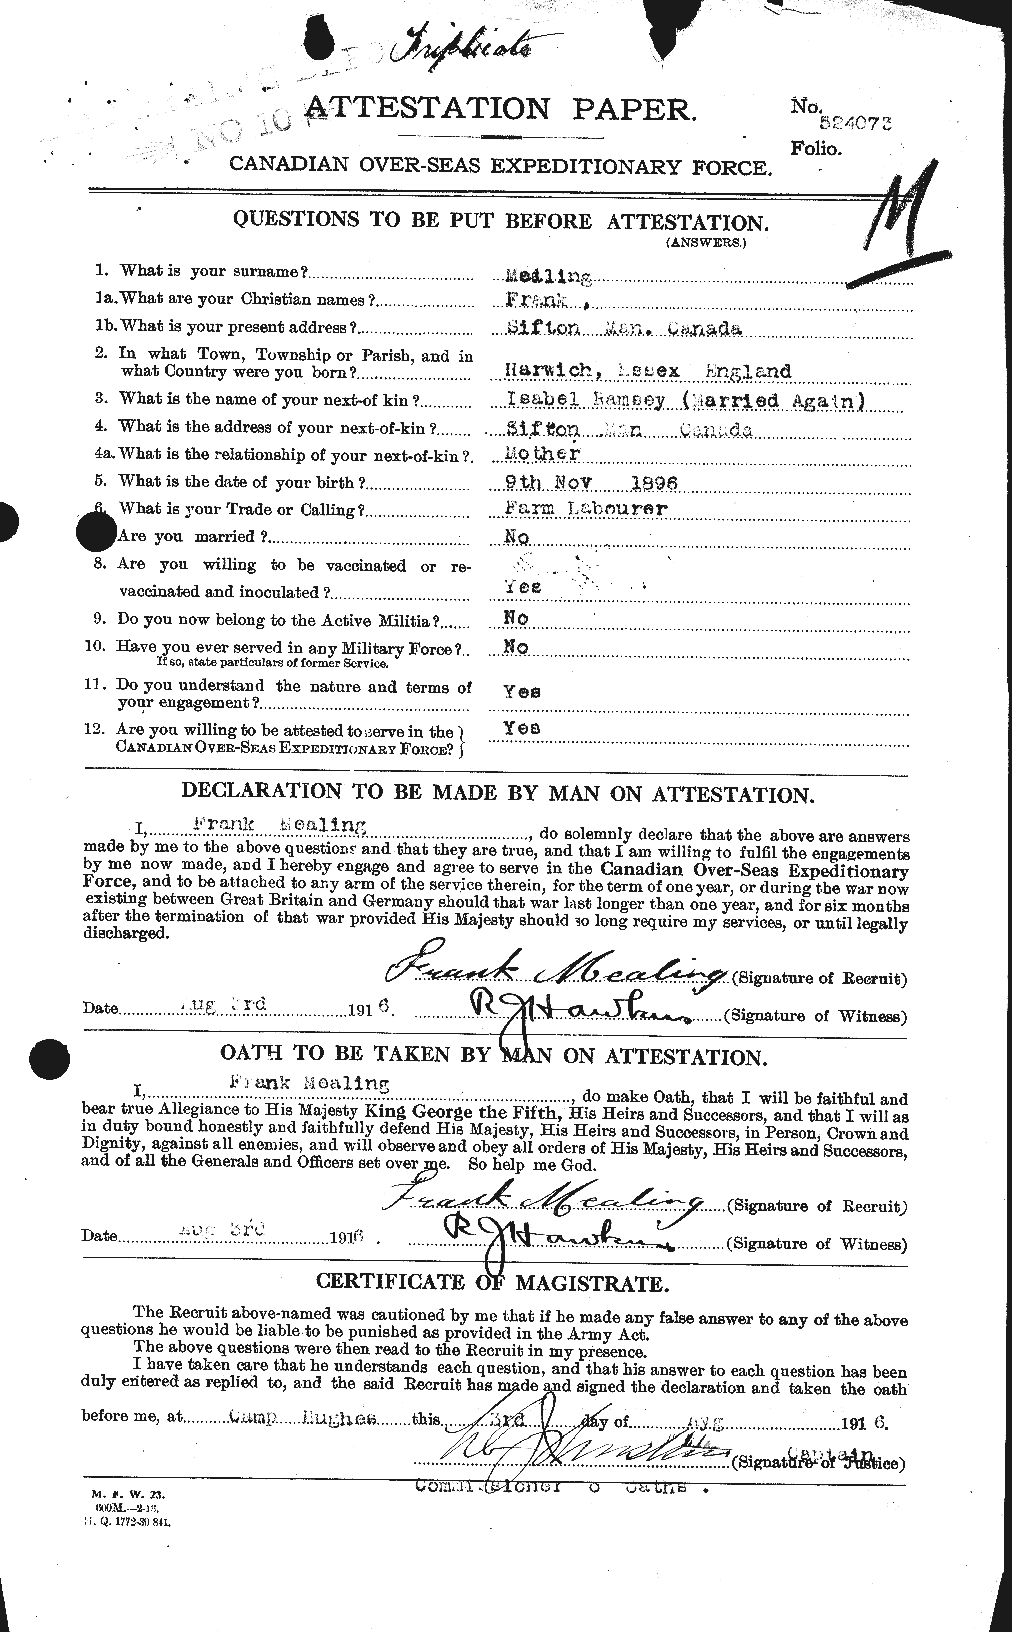 Dossiers du Personnel de la Première Guerre mondiale - CEC 489622a